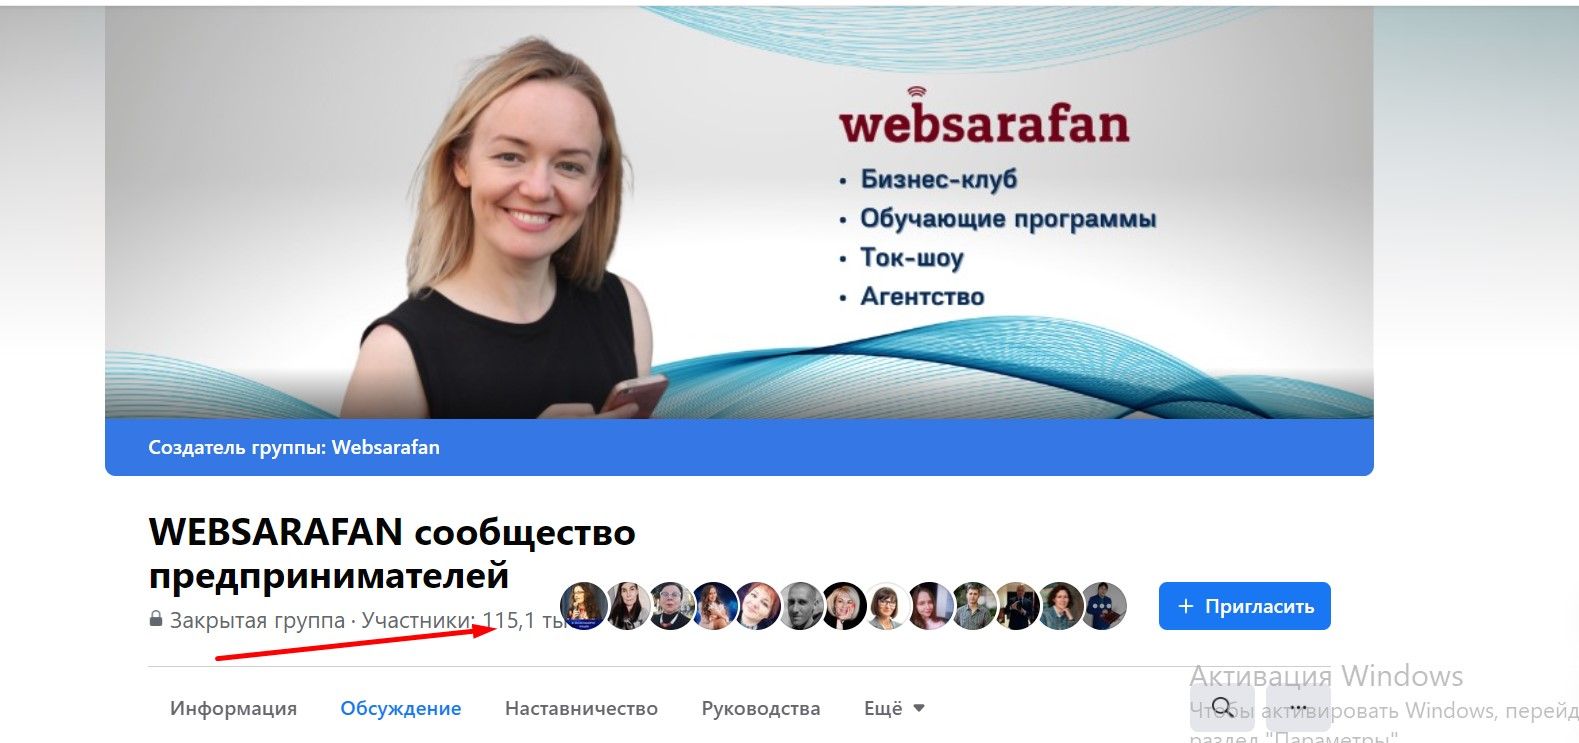 В группе Websarafan уже больше 115 000 участников — это и бизнесмены, и фрилансеры